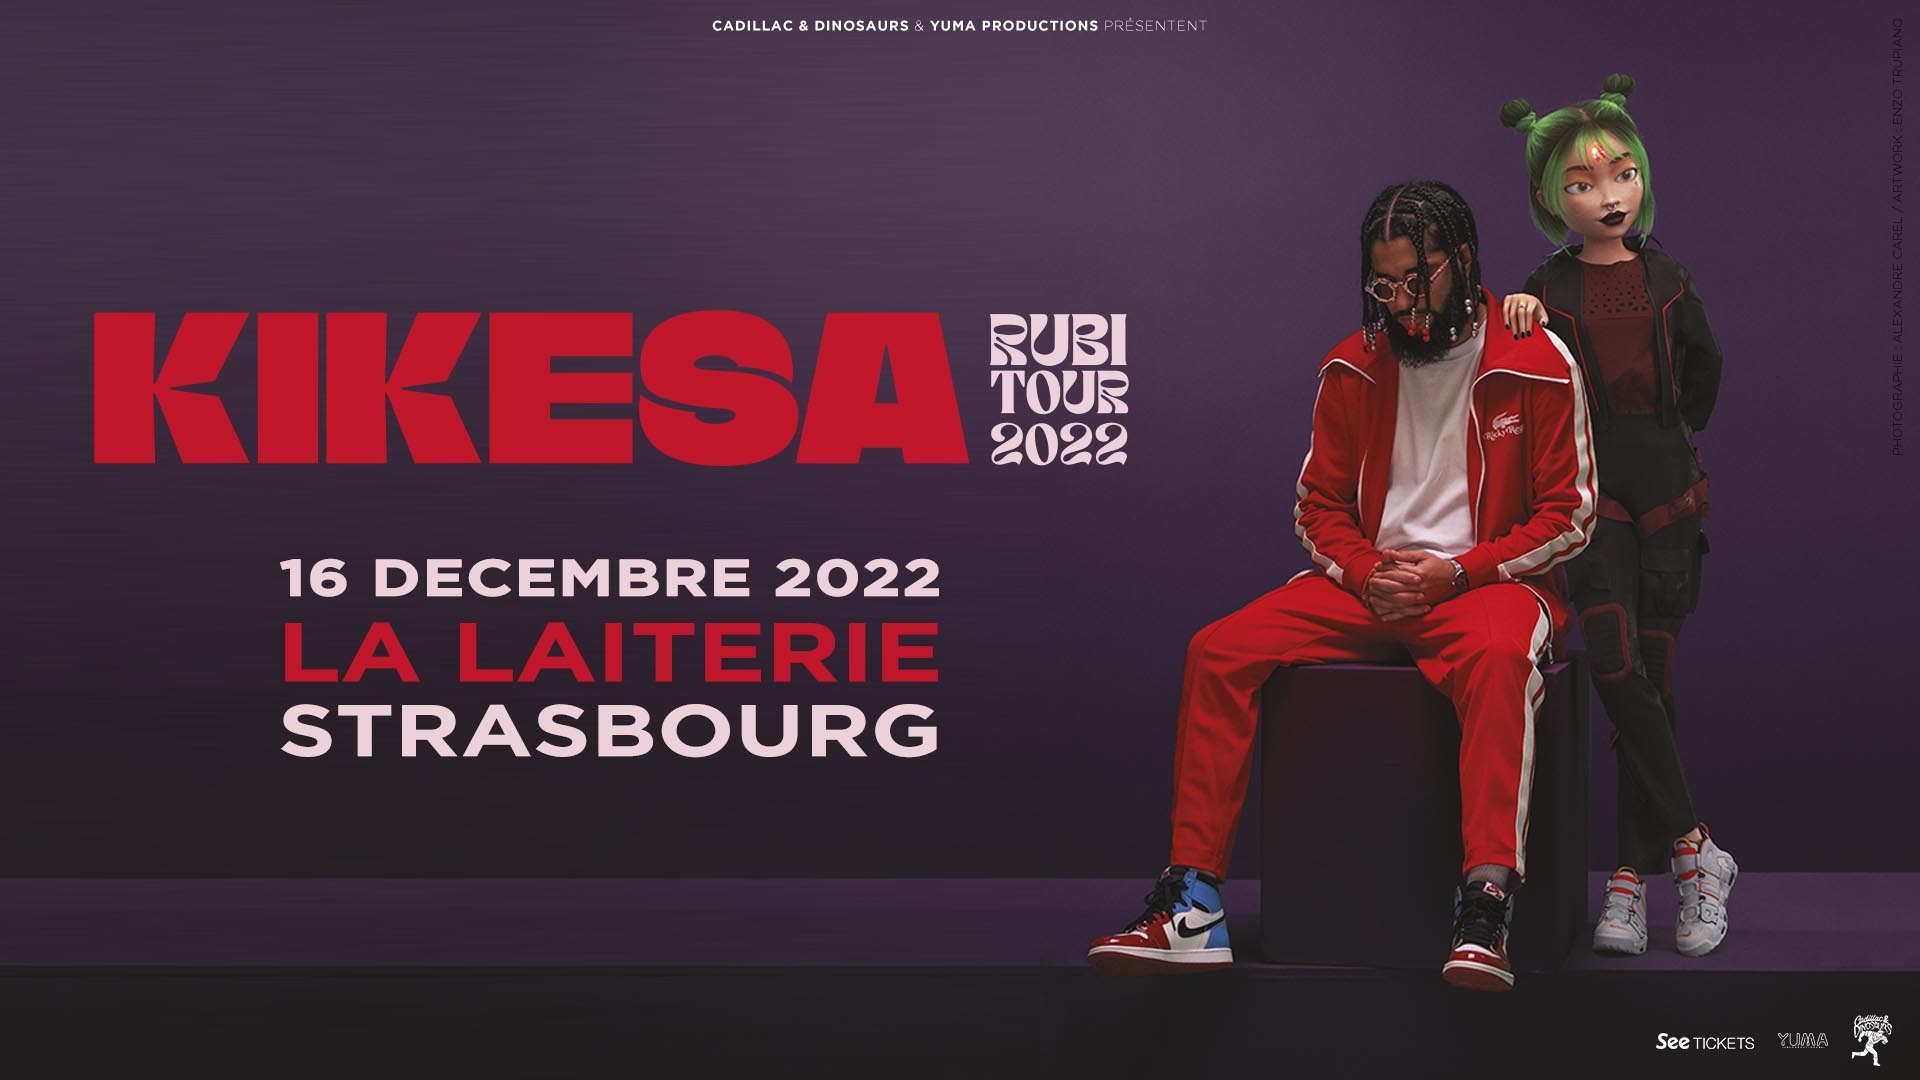 KIKESA – RUBI TOUR 2022